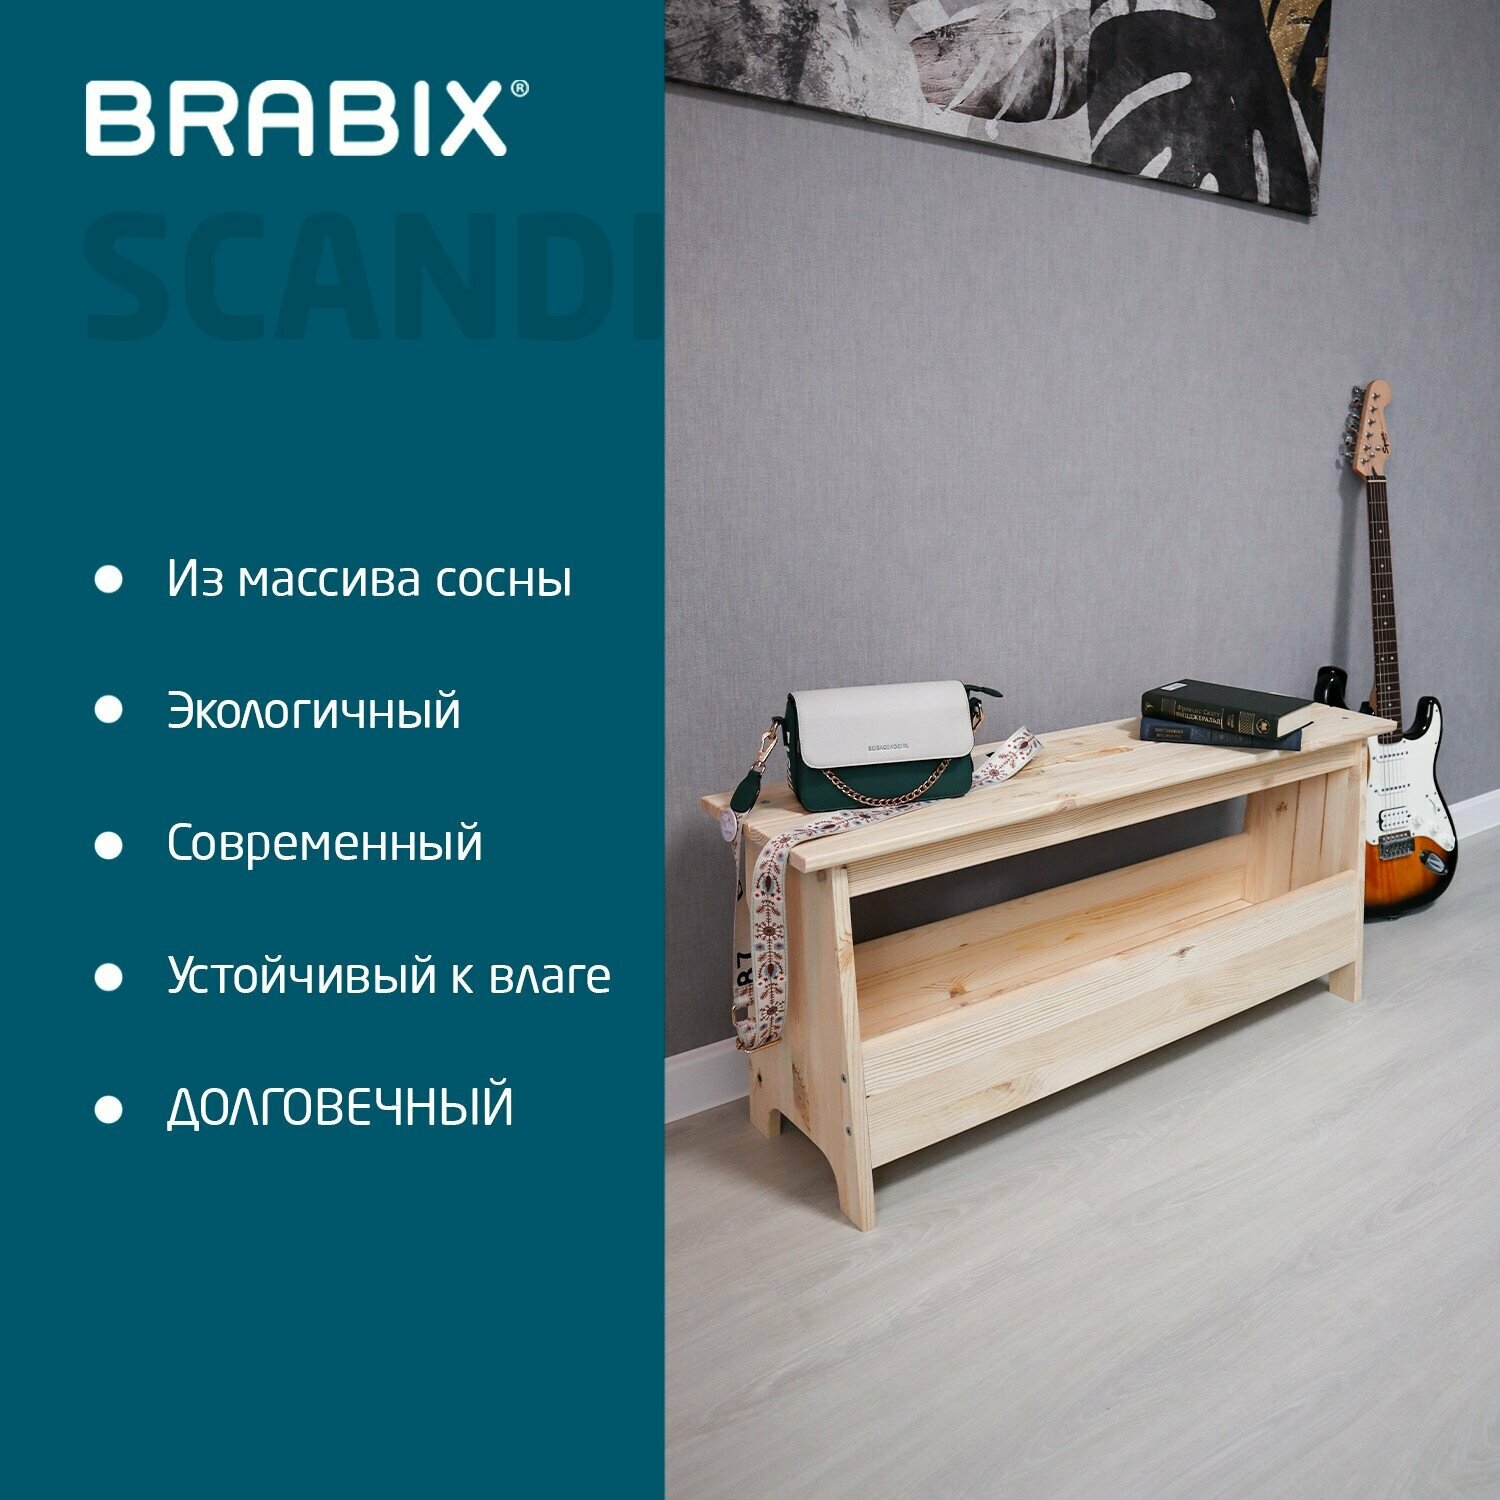 Скамья табурет деревянная с отделением для хранения для дома и дачи, сосна, Brabix Scandi SC-003 от производителя ikea